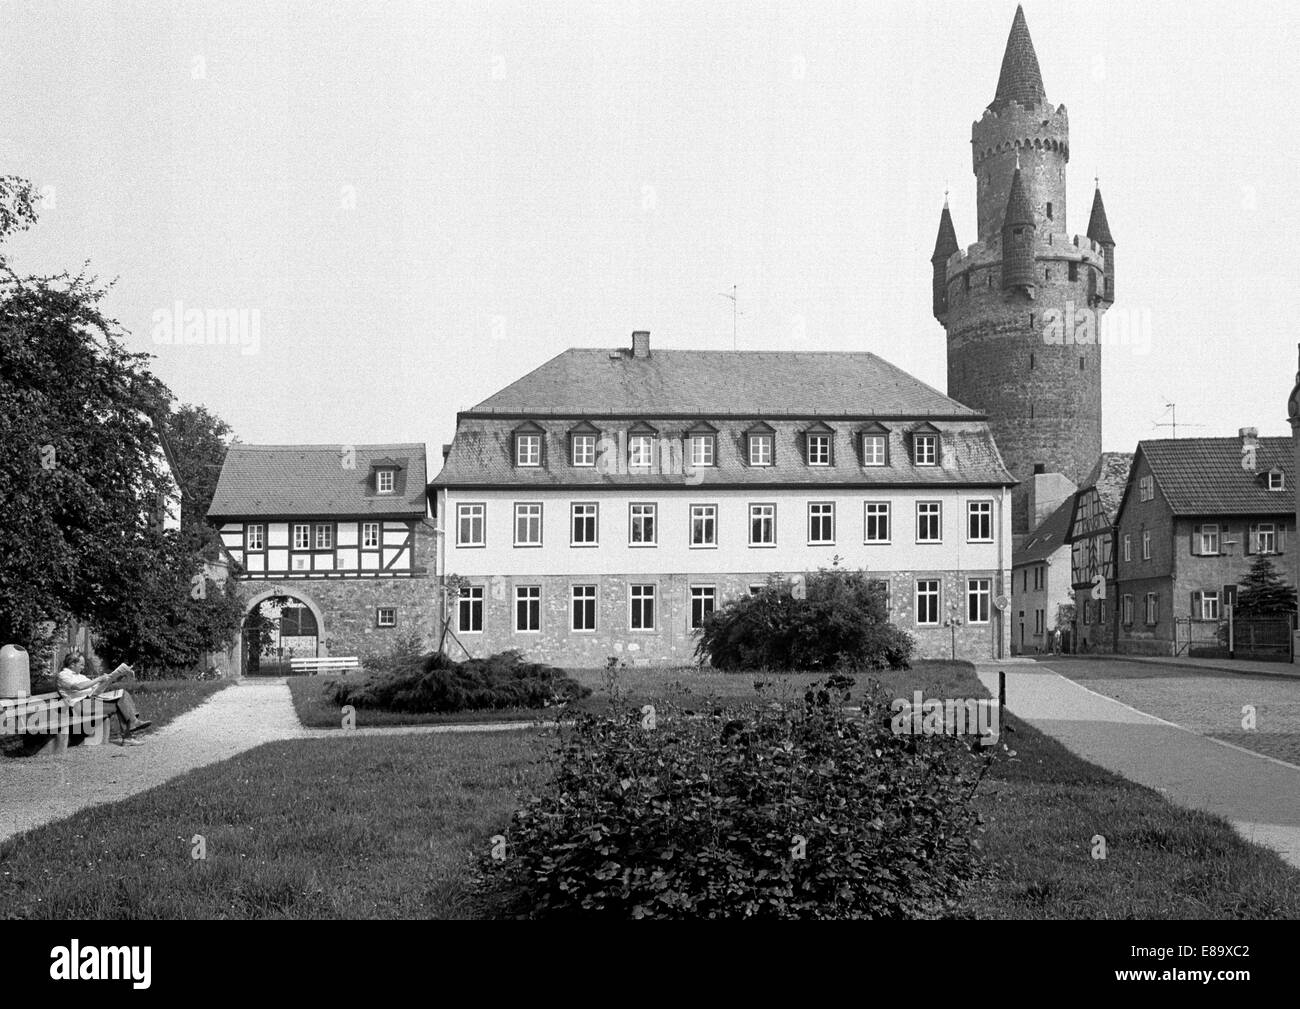 Achtziger Jahre, Adolfsturm, Butterfassturm, Wehrturm der Reichsburg in Friedberg (Hessen) in der Wetterau Stock Photo